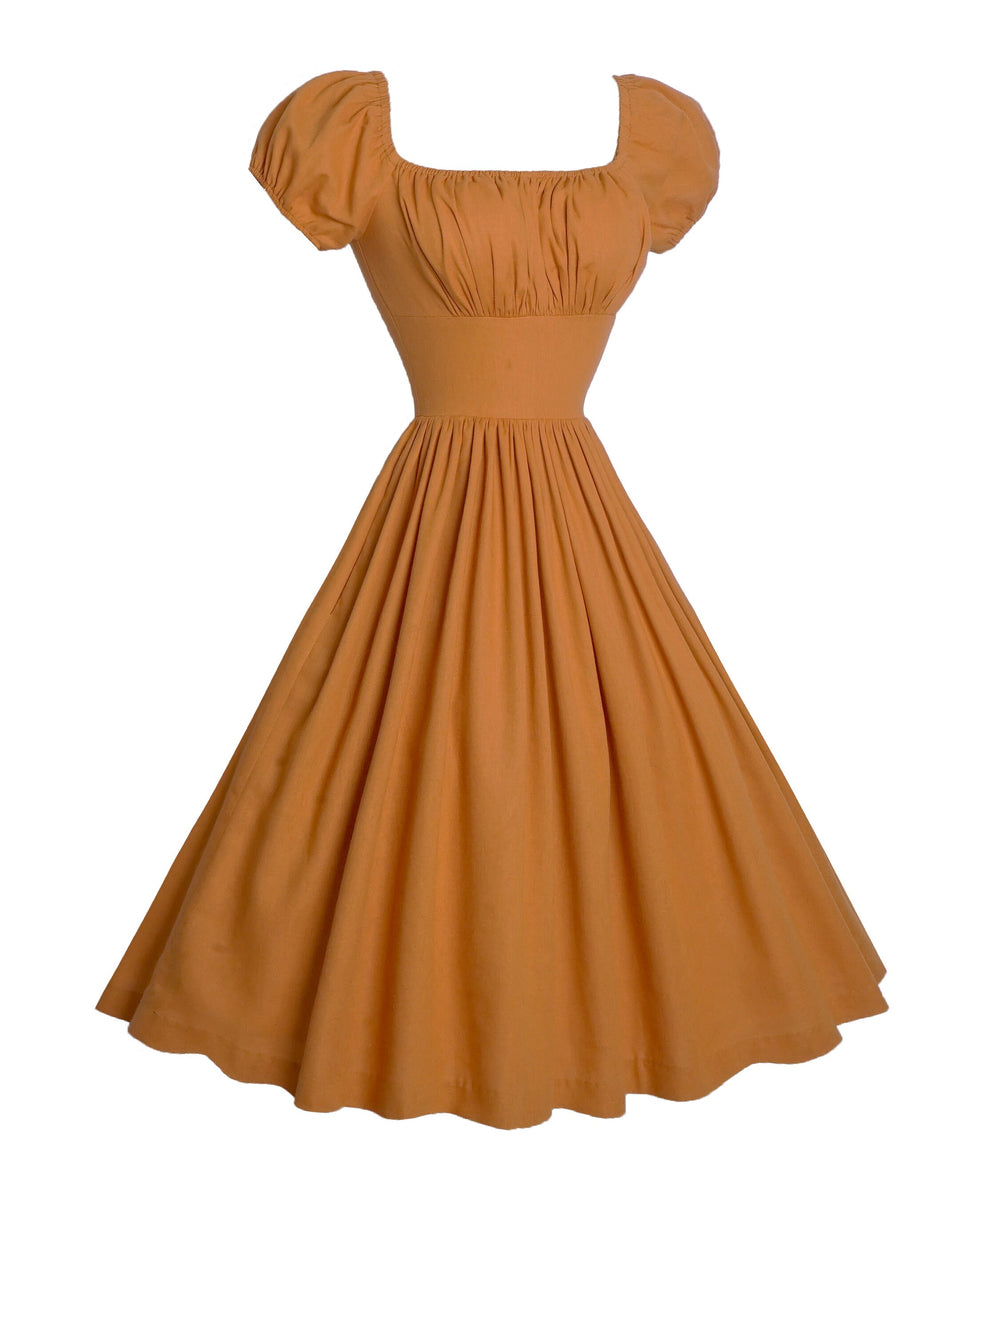 MTO - Loretta Dress in Cinnamon Brown Linen